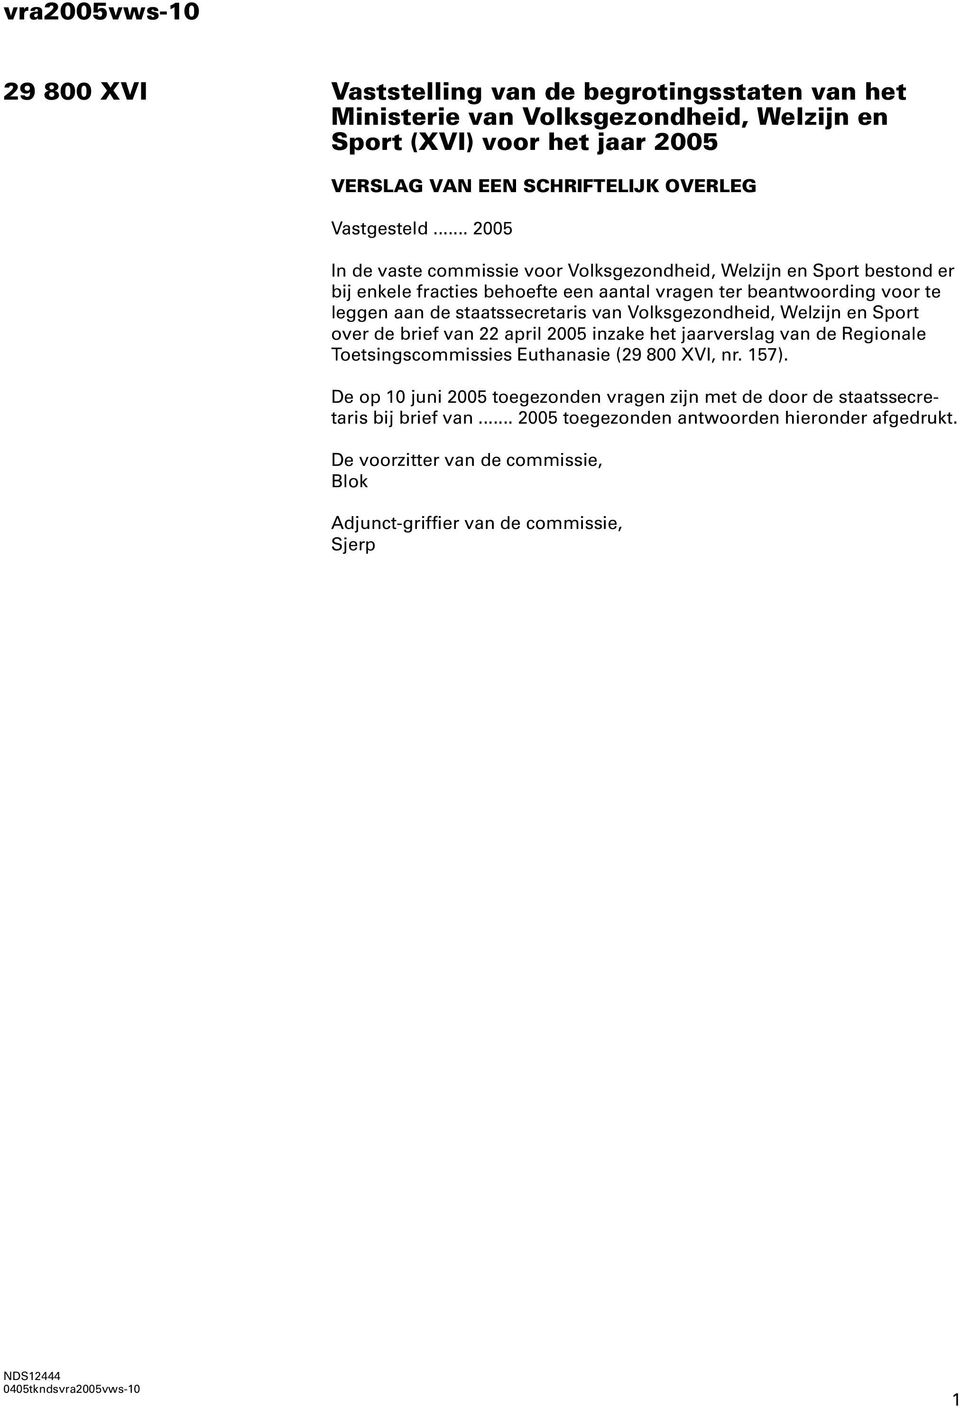 Volksgezondheid, Welzijn en Sport over de brief van 22 april 2005 inzake het jaarverslag van de Regionale Toetsingscommissies Euthanasie (29 800 XVI, nr. 157).